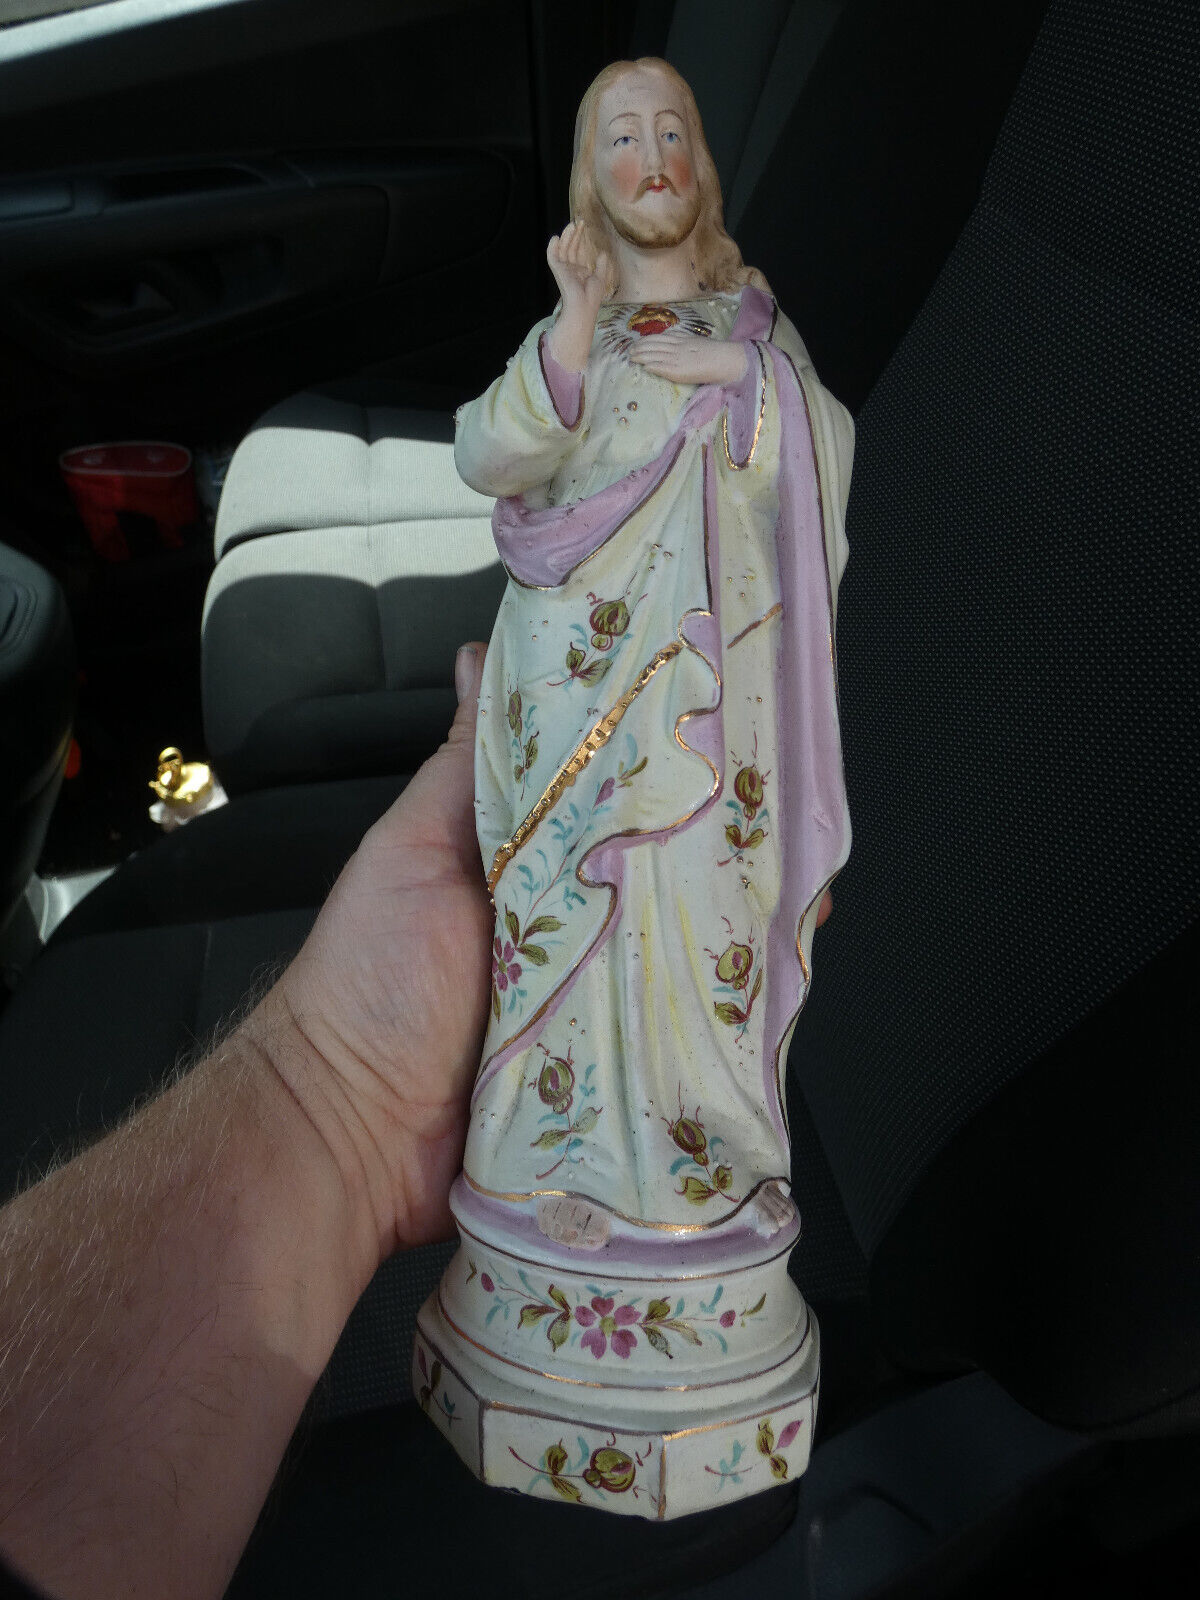 German vintage bisque porcelain Sacred heart jesus statue figurine